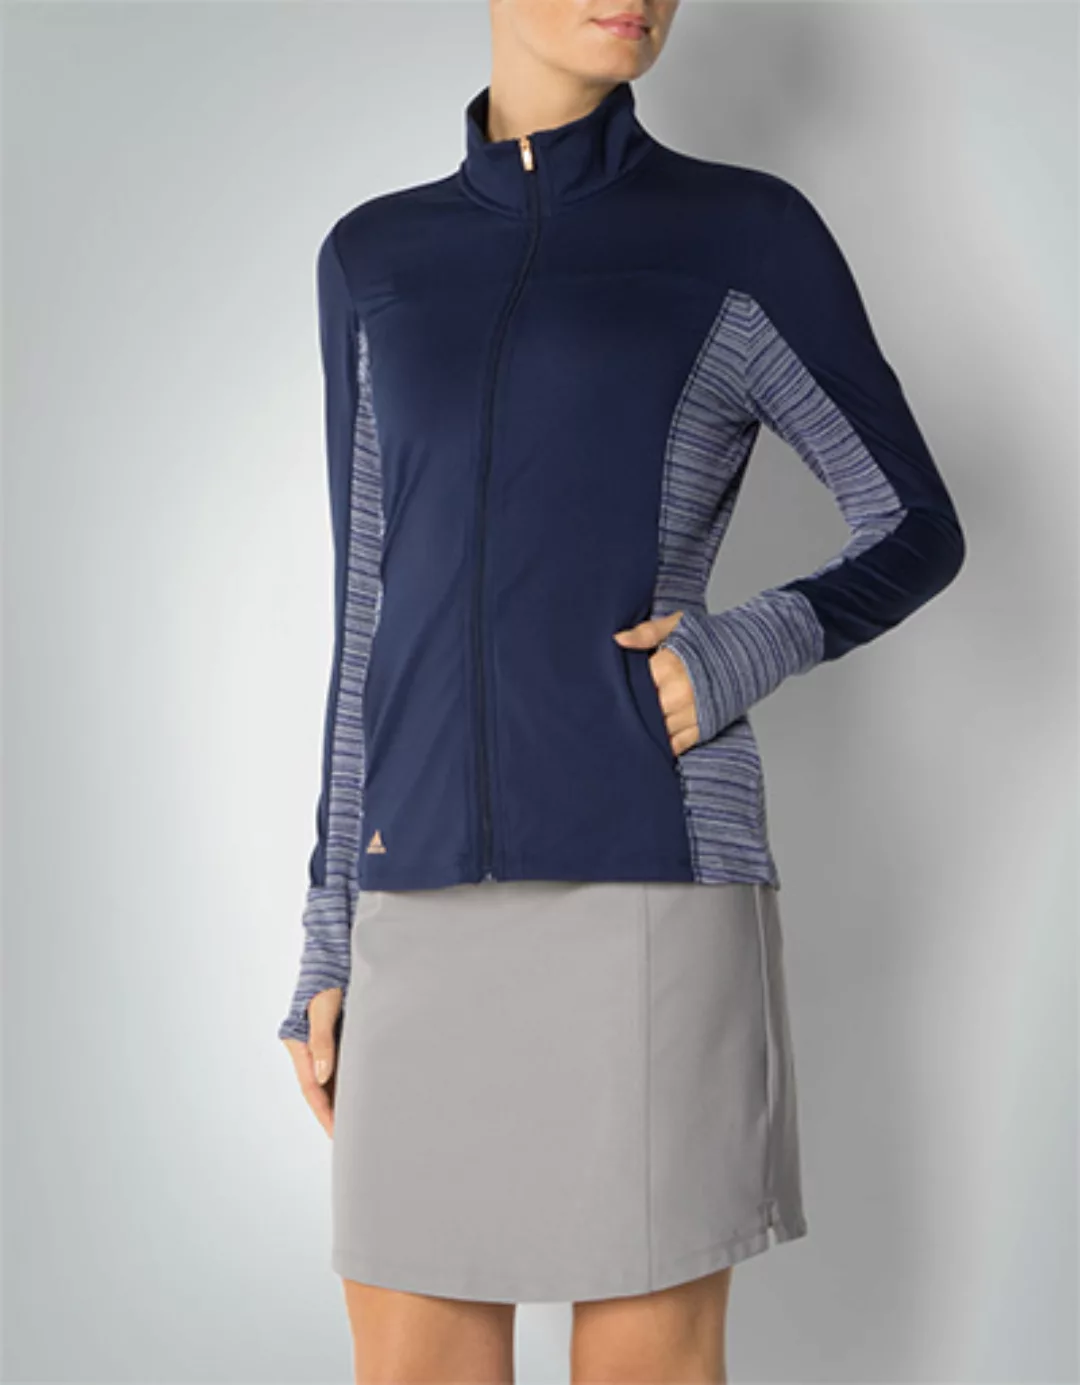 adidas Golf Damen Zip-Jacke navy AE9559 günstig online kaufen